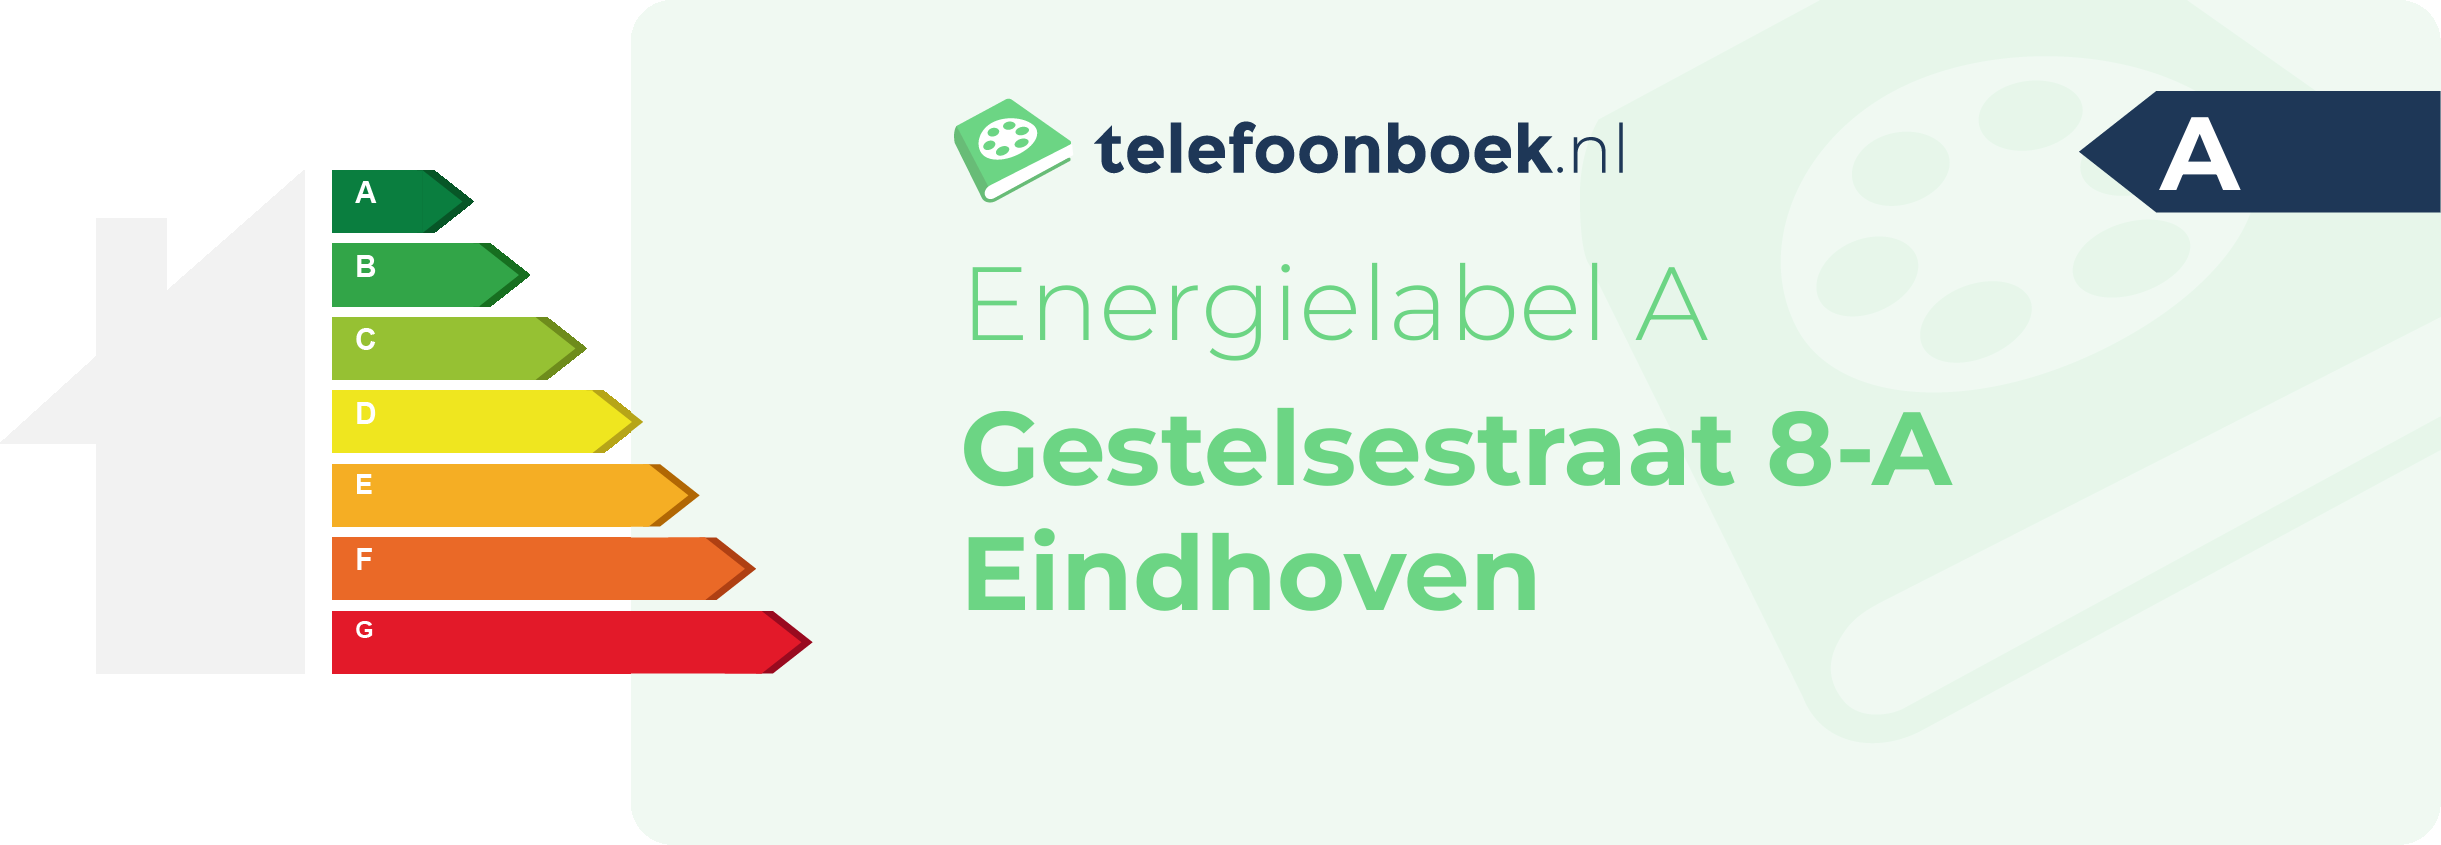 Energielabel Gestelsestraat 8-A Eindhoven